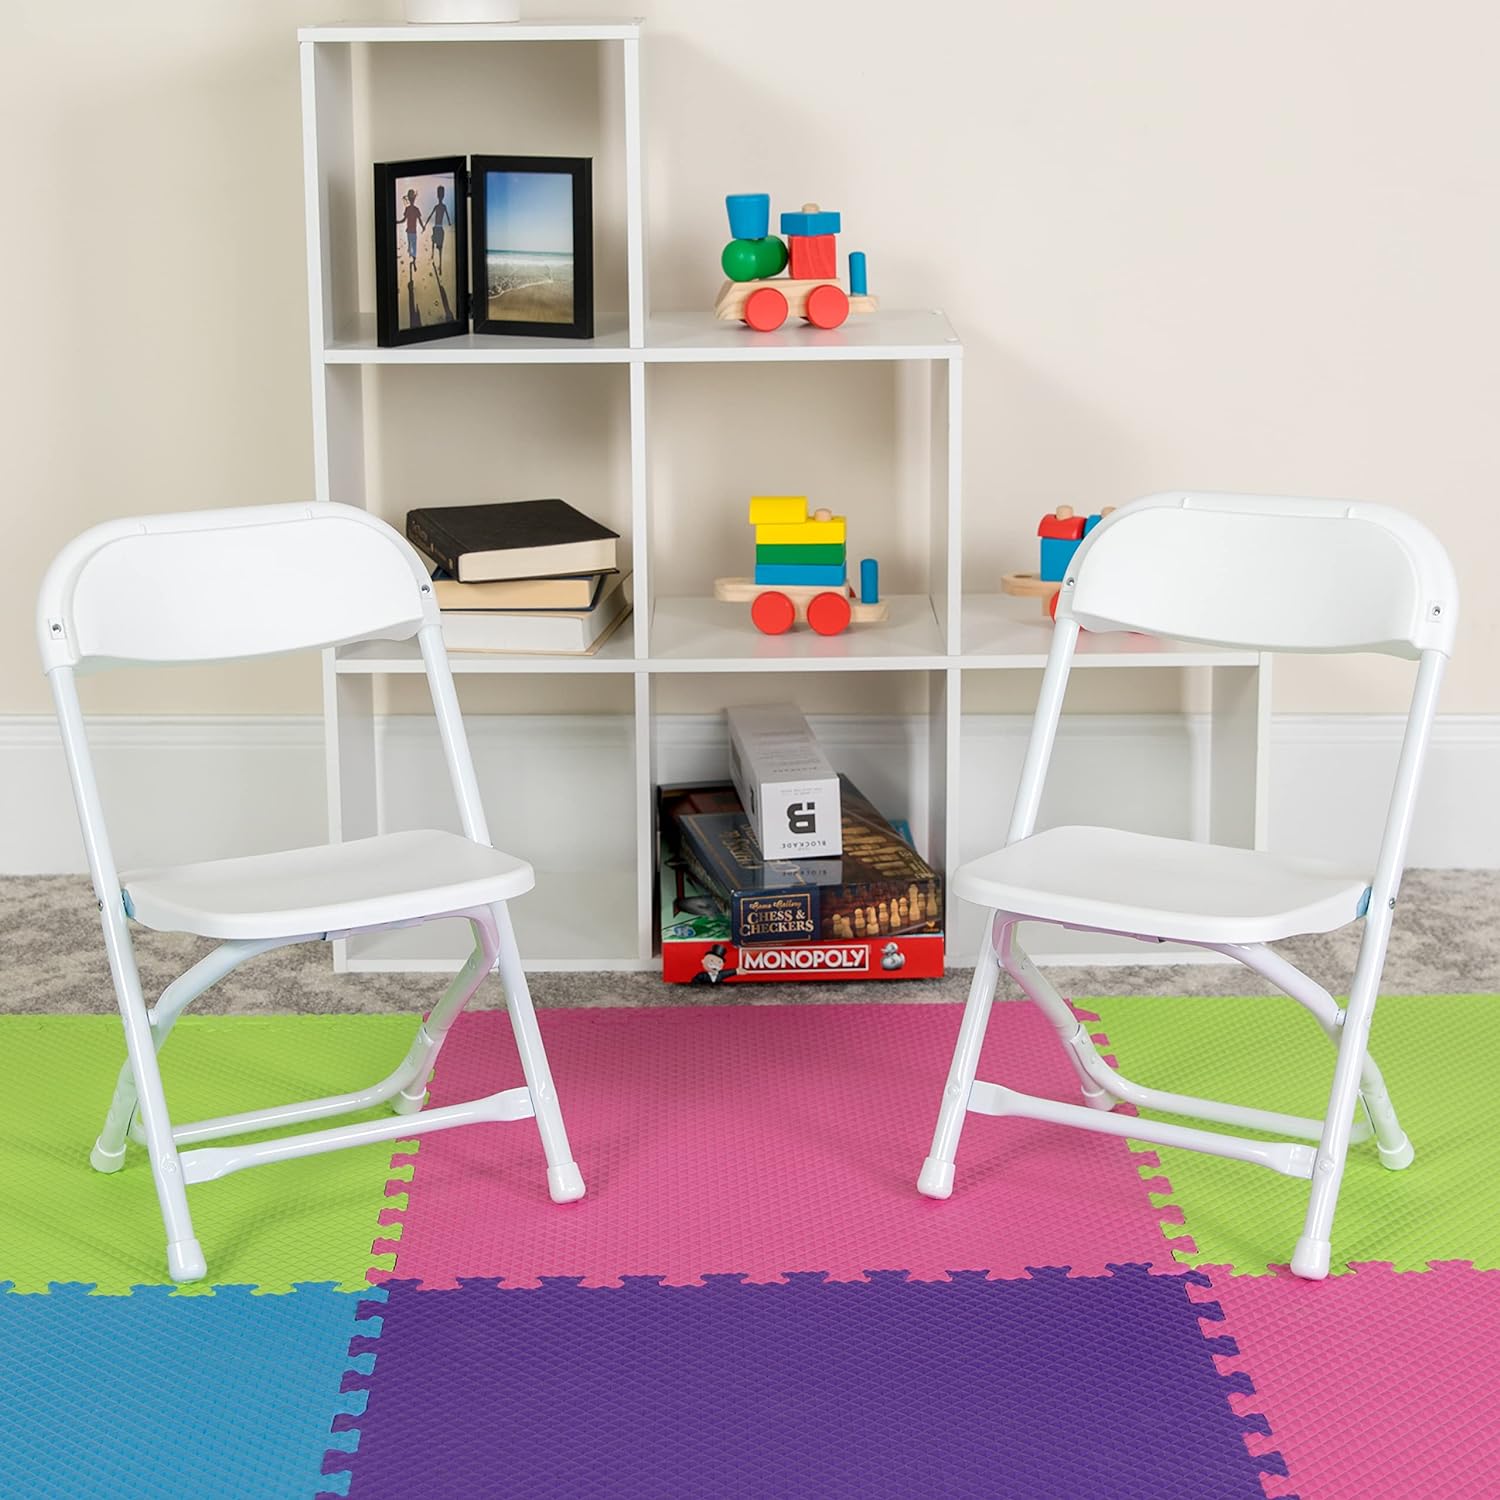 Muebles para niños silla plegable de plástico., Acero, Blanco